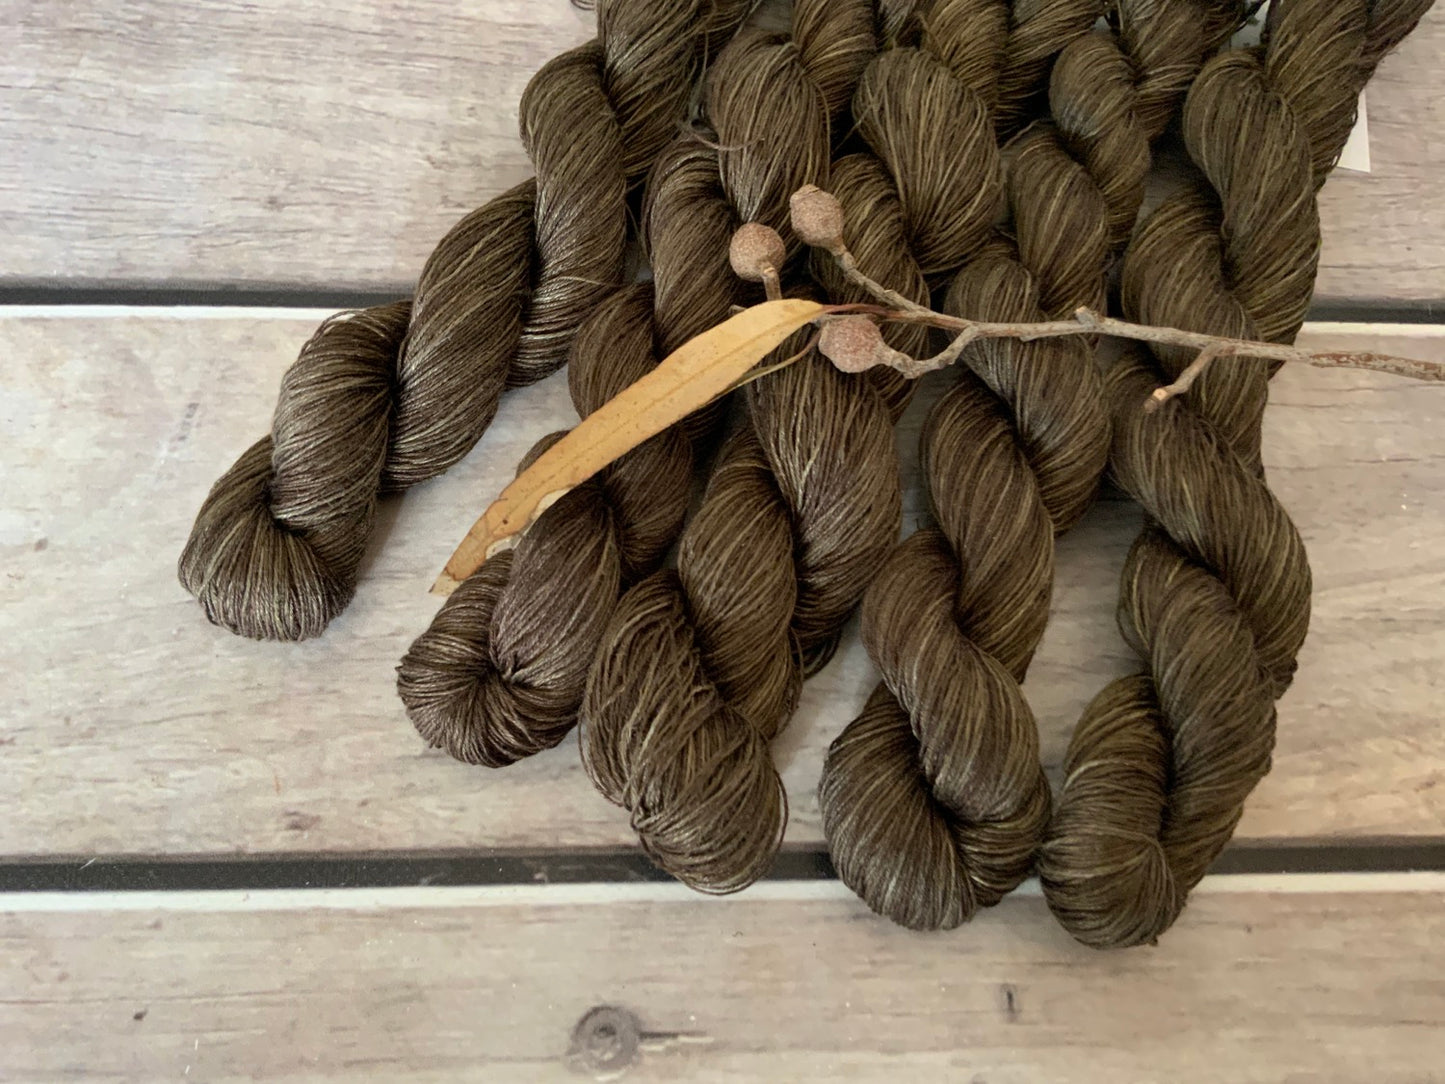 Dried Bark on Ceylon pure linen yarn - 50 gm skeins